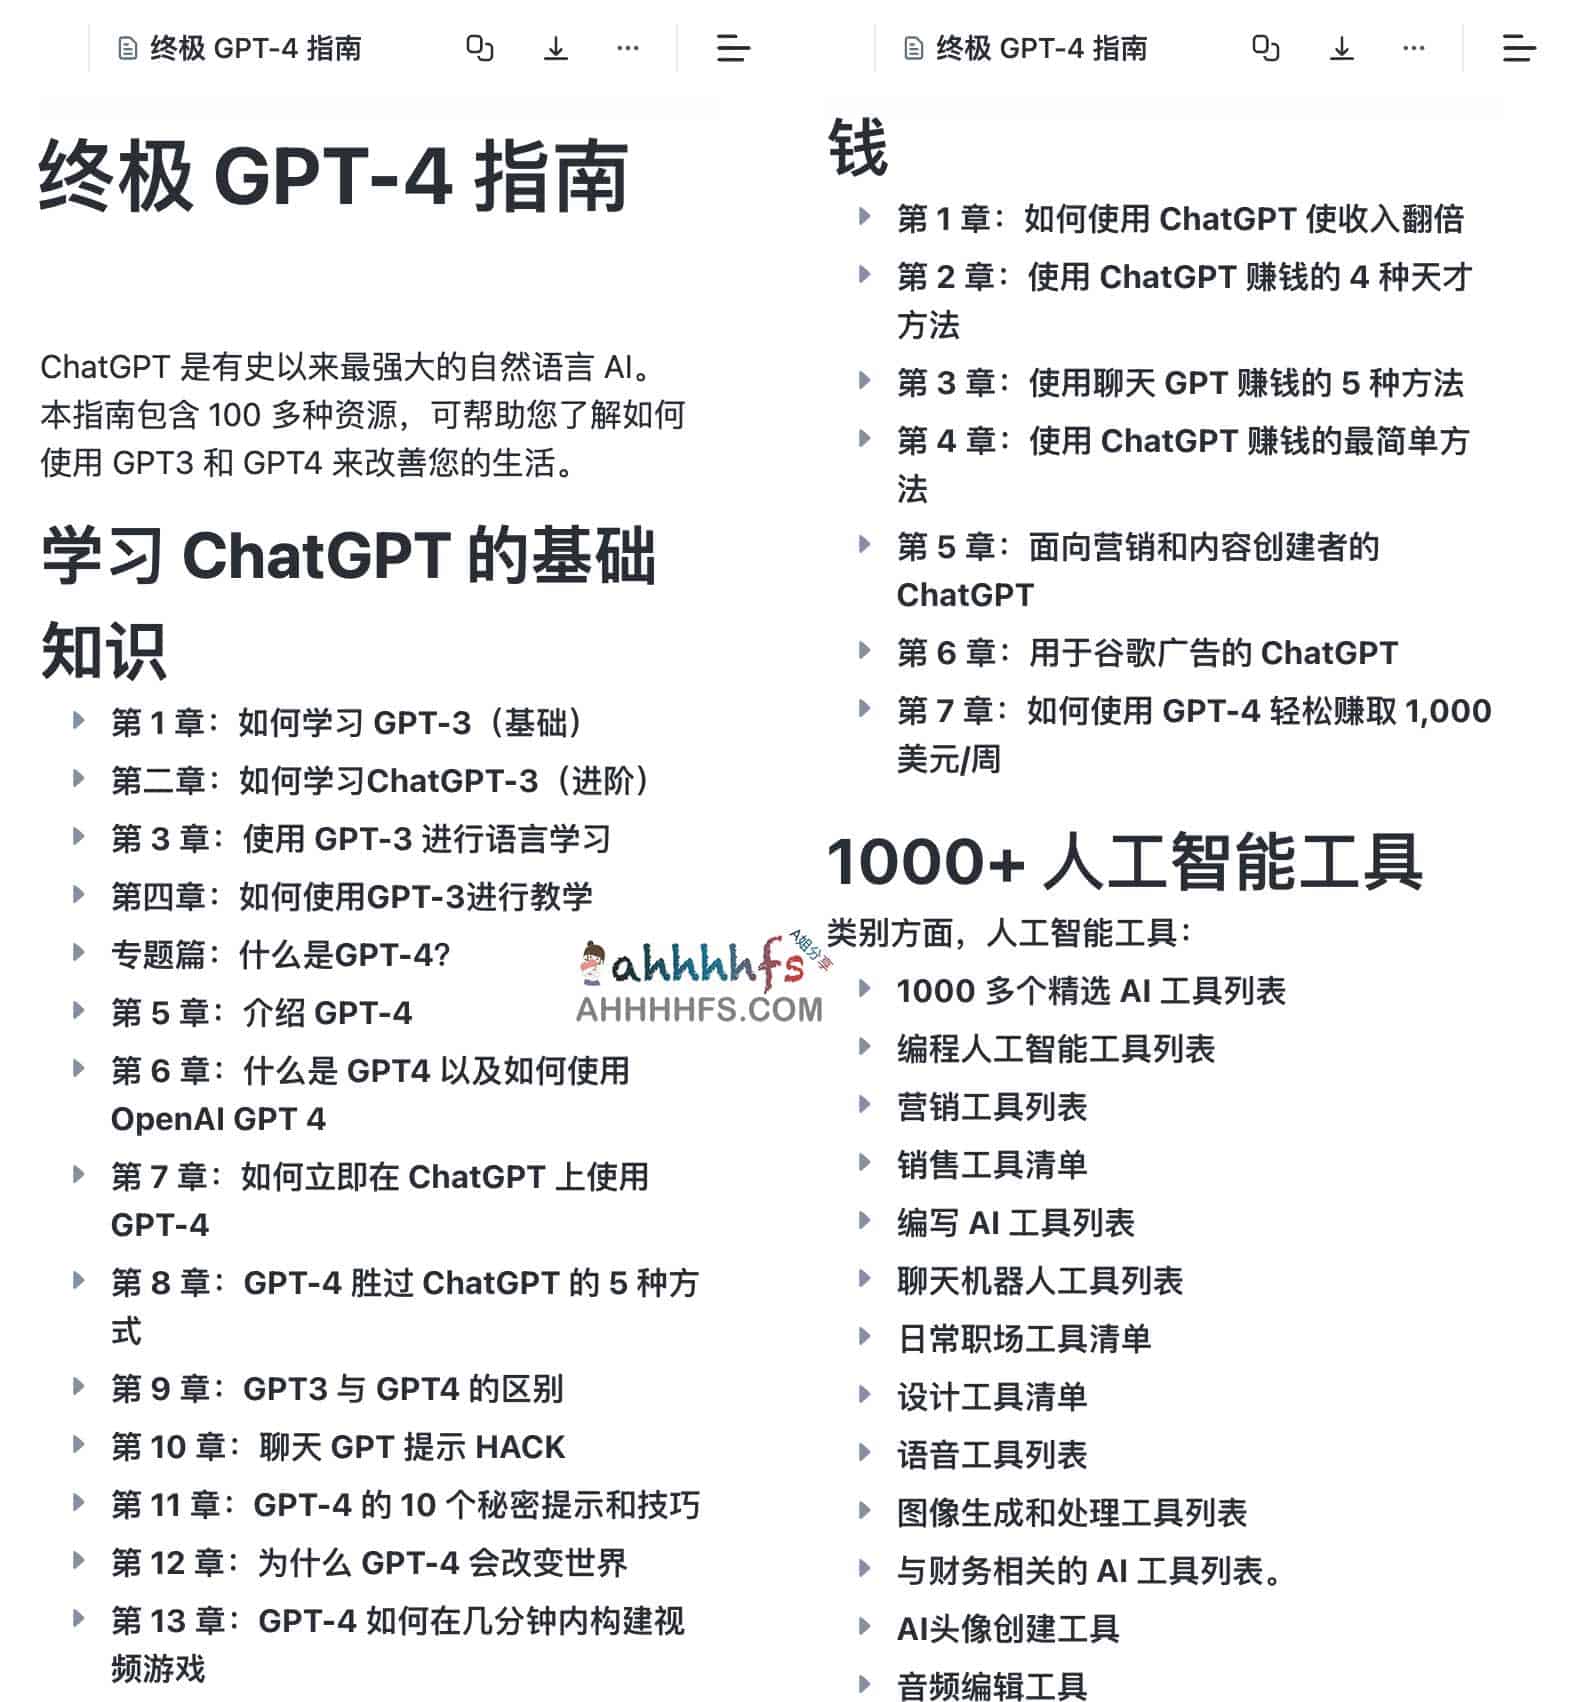 终极 GPT-4 指南 The Ultimate GPT-4 Guide